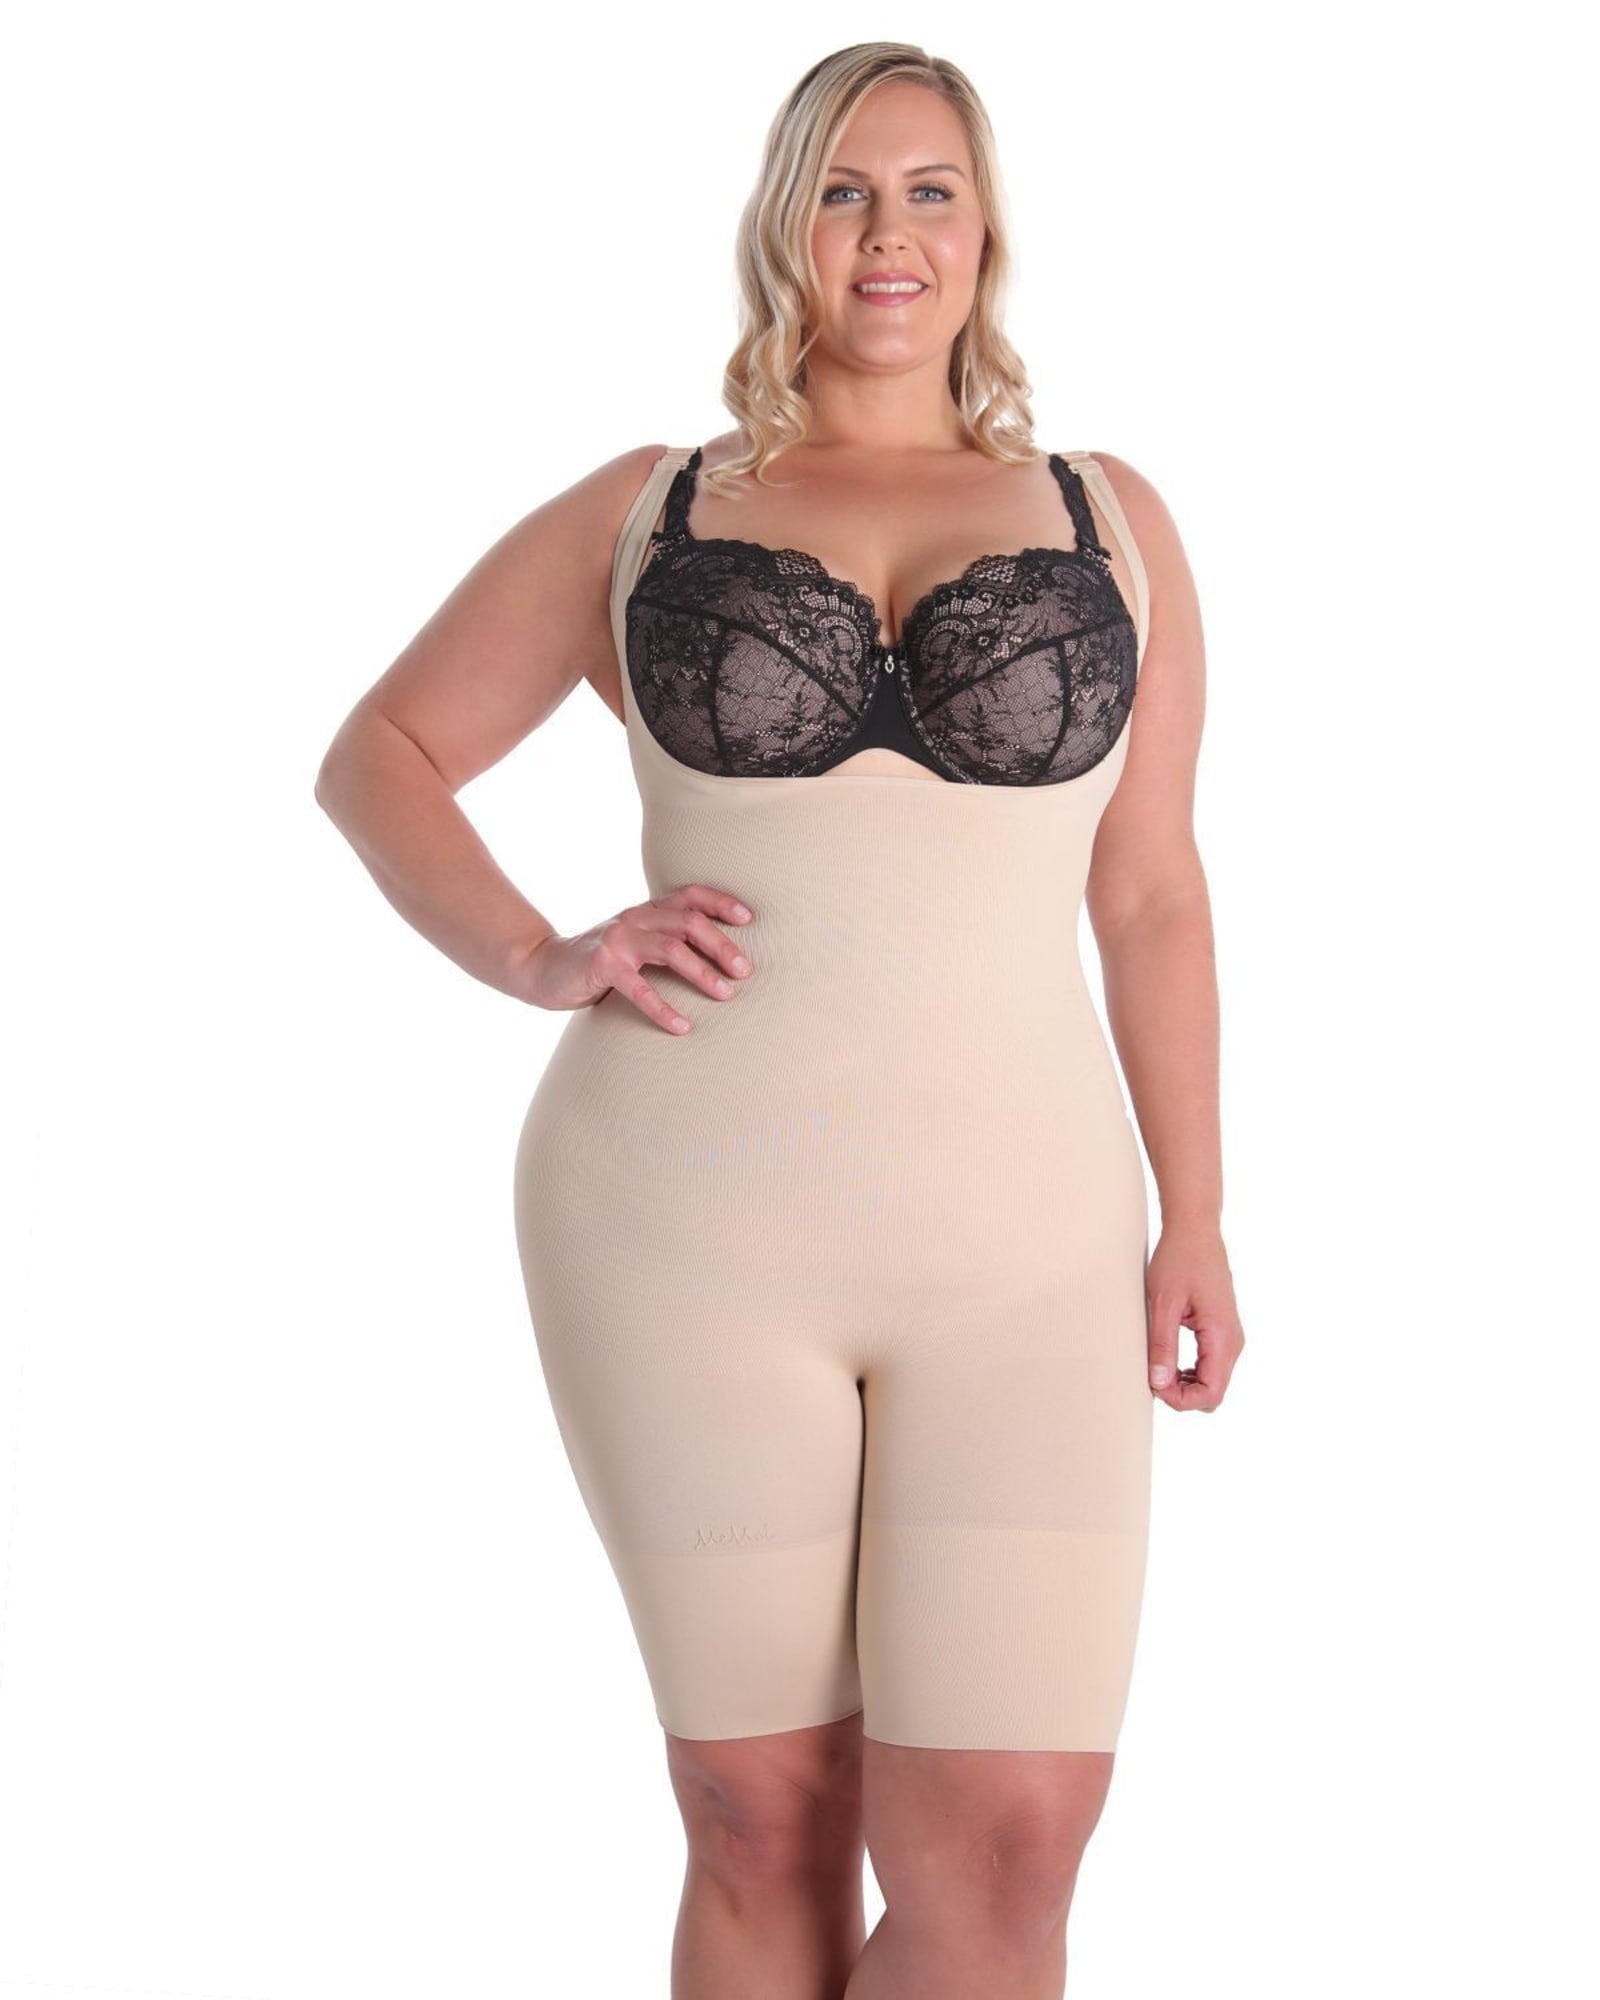 Unisex Underwear,wrap Around Bra,Nude Sports Bra,Plus Size Bustier